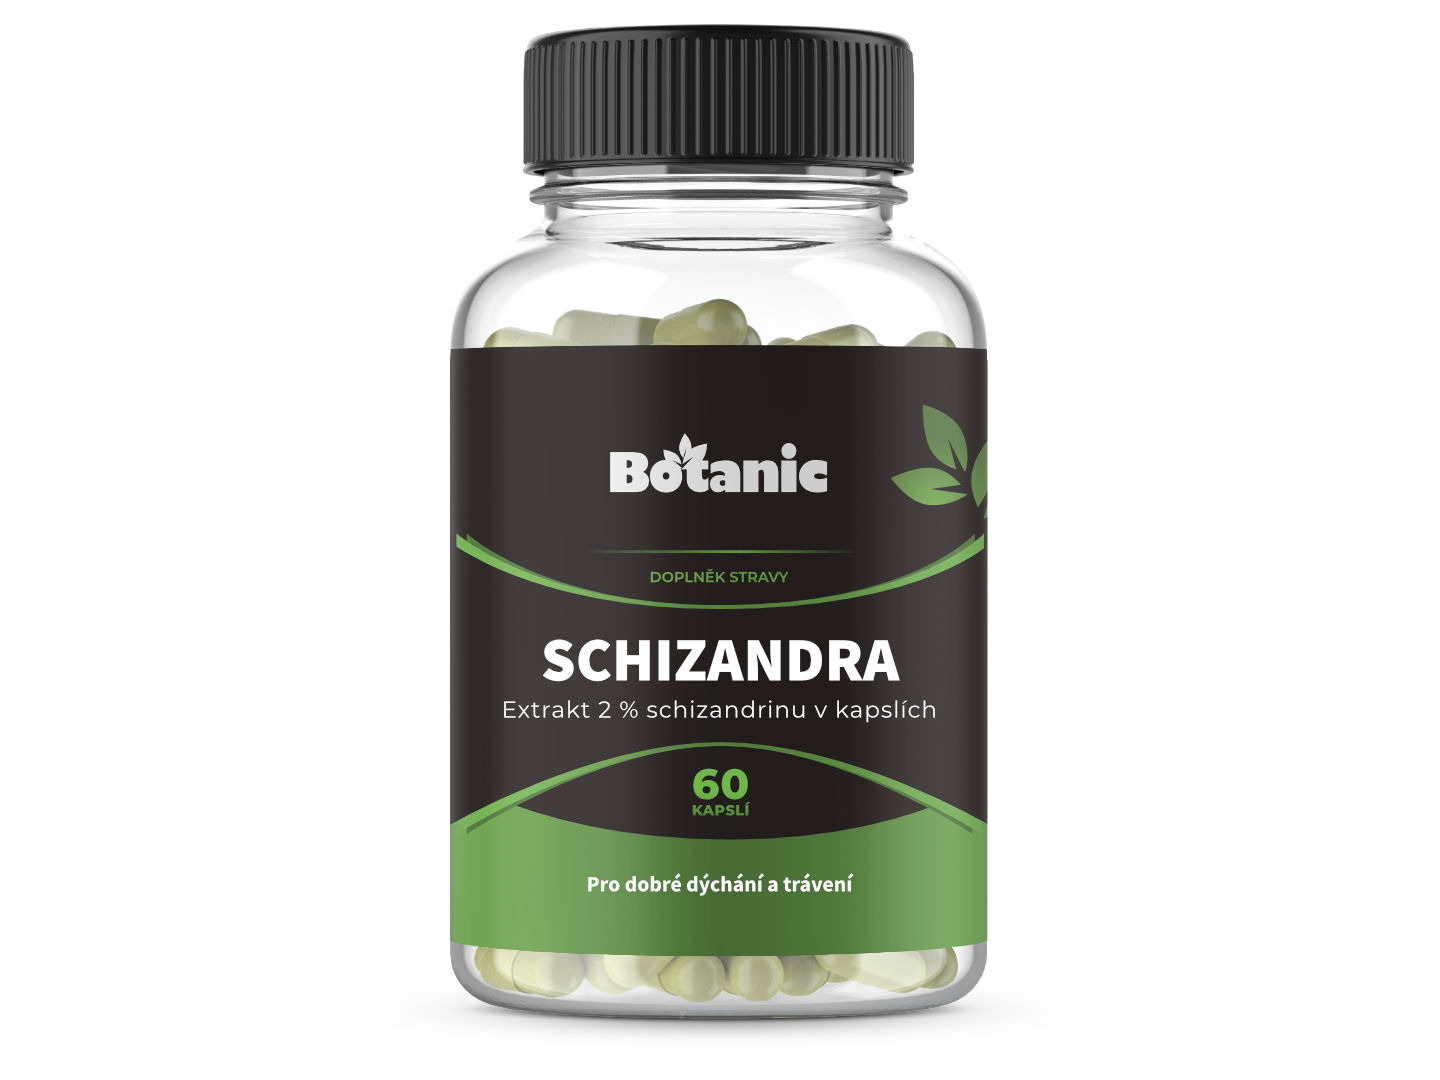 Botanic Schizandra čínská - Extrakt 2 % schizandrinu v kapslích 60kap.